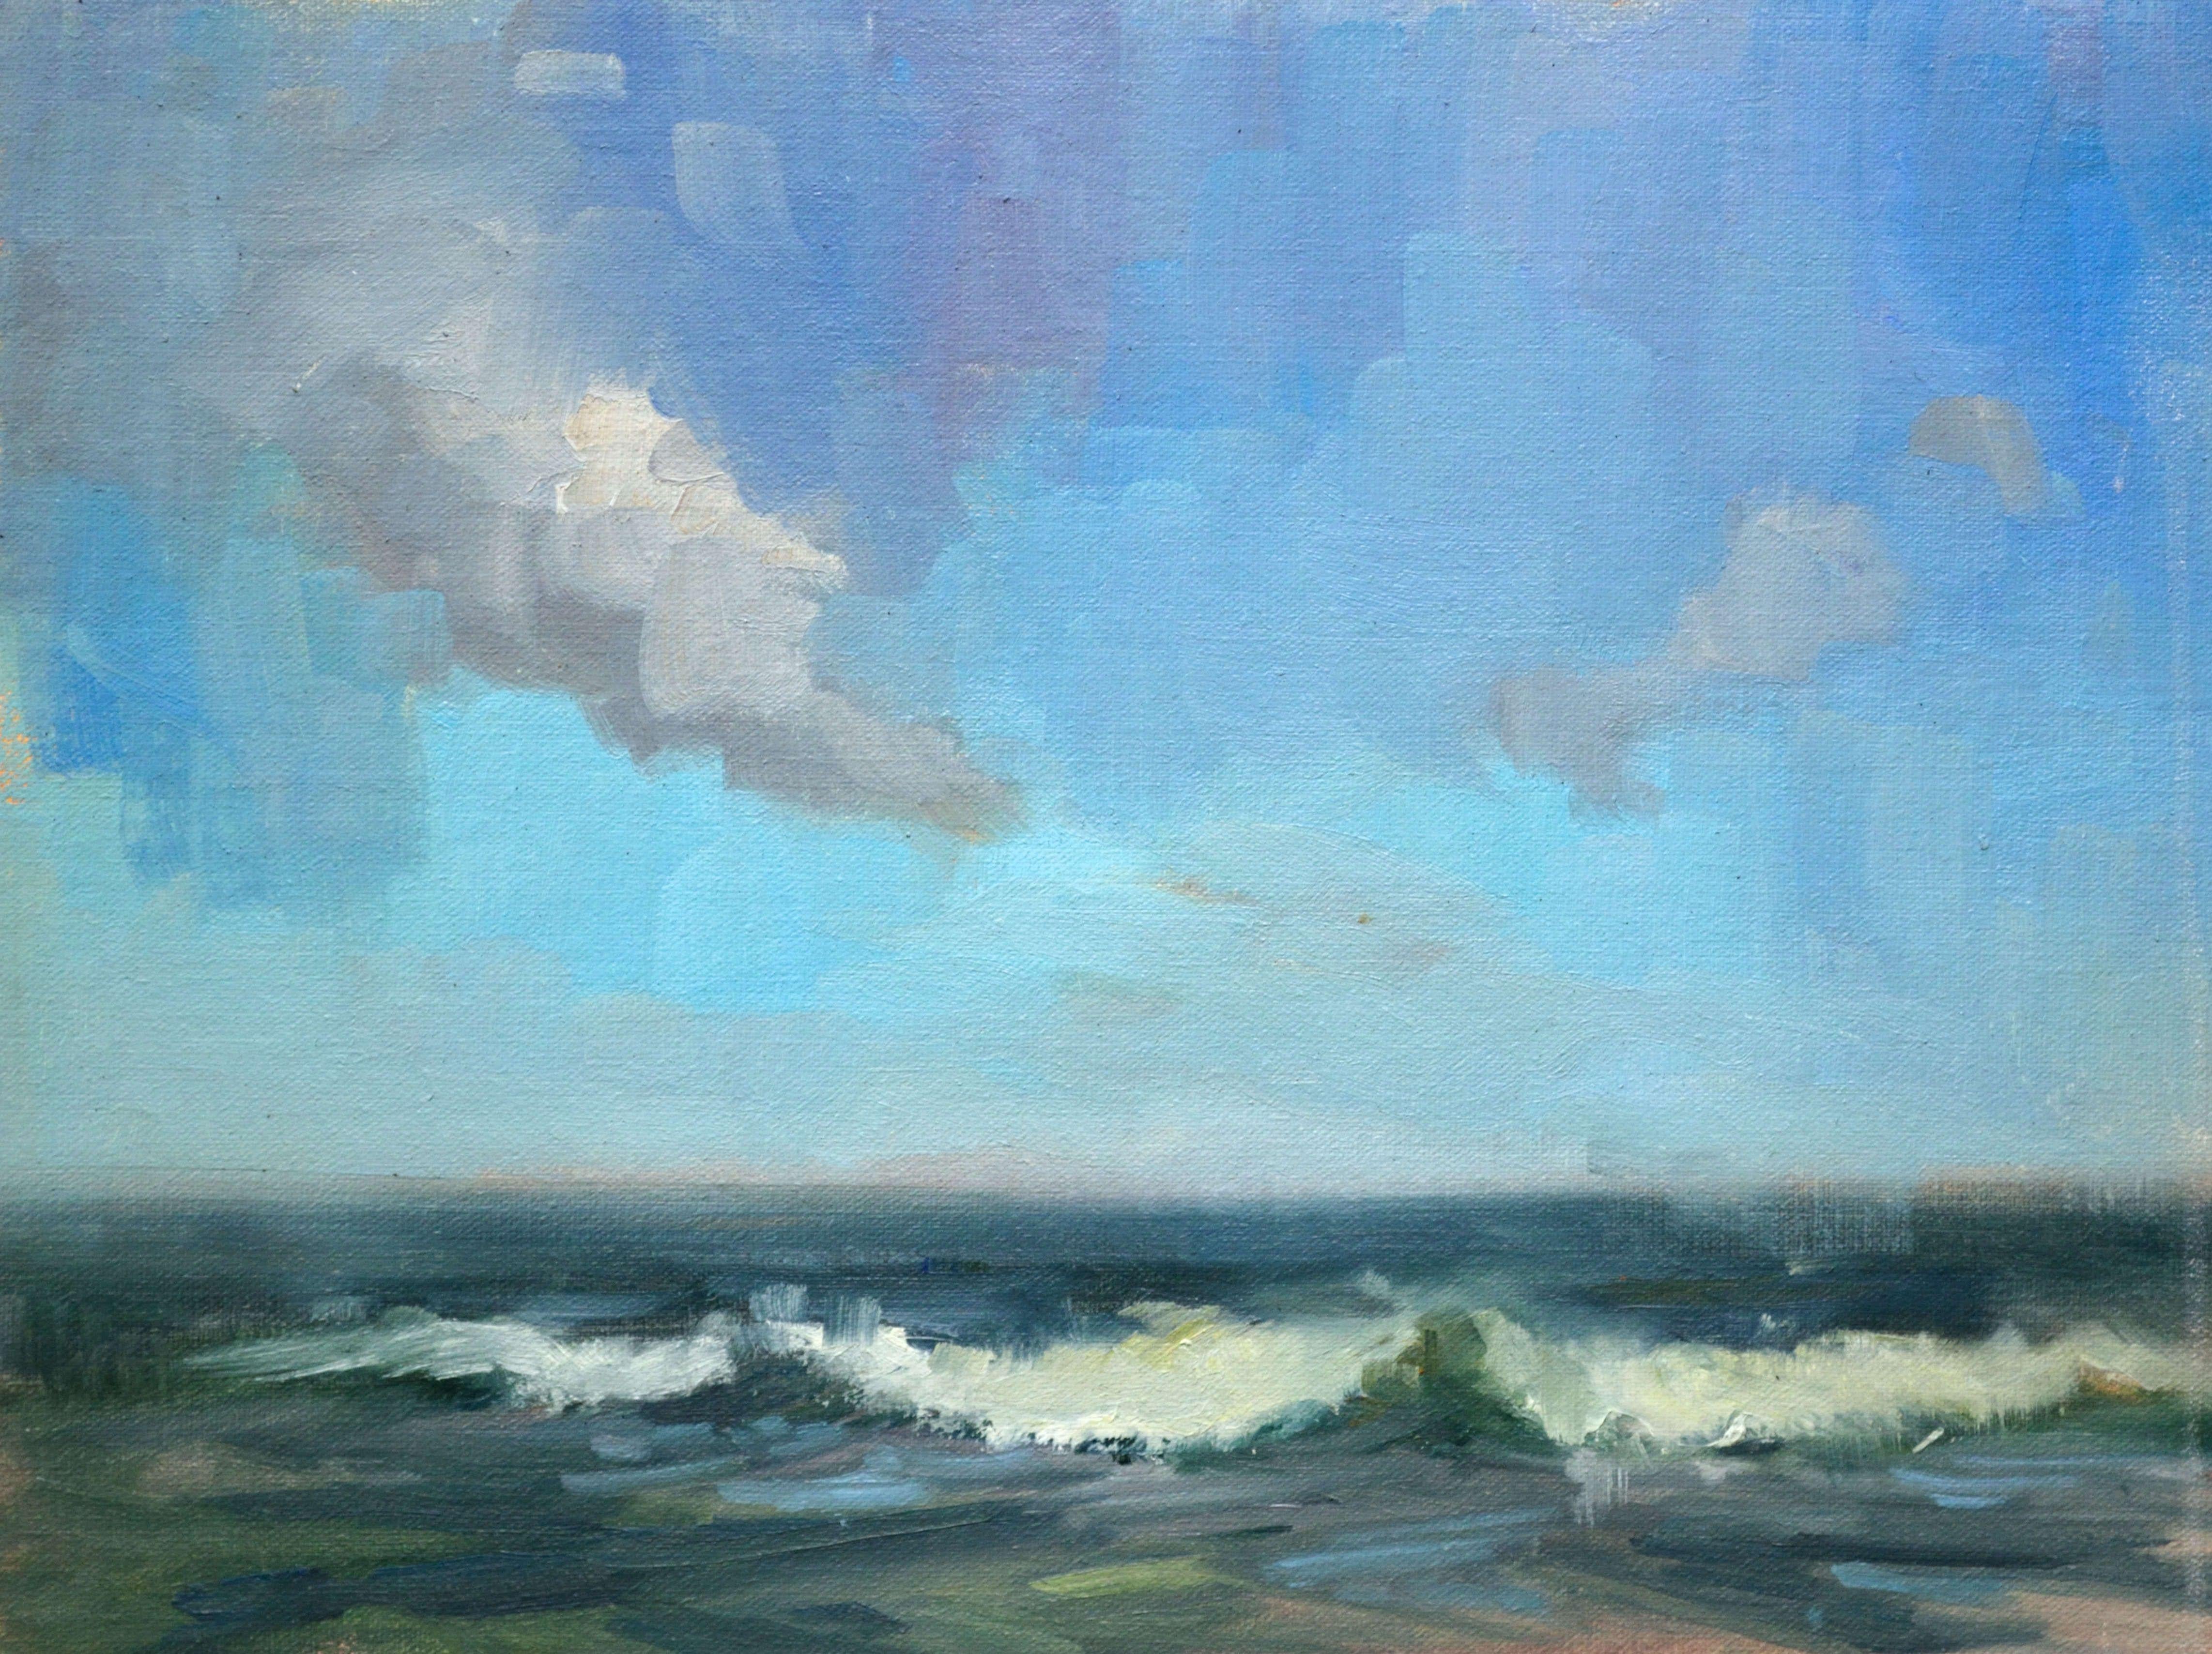 Peinture, huile sur toile, nuages et surf - Painting de Timon Sloane